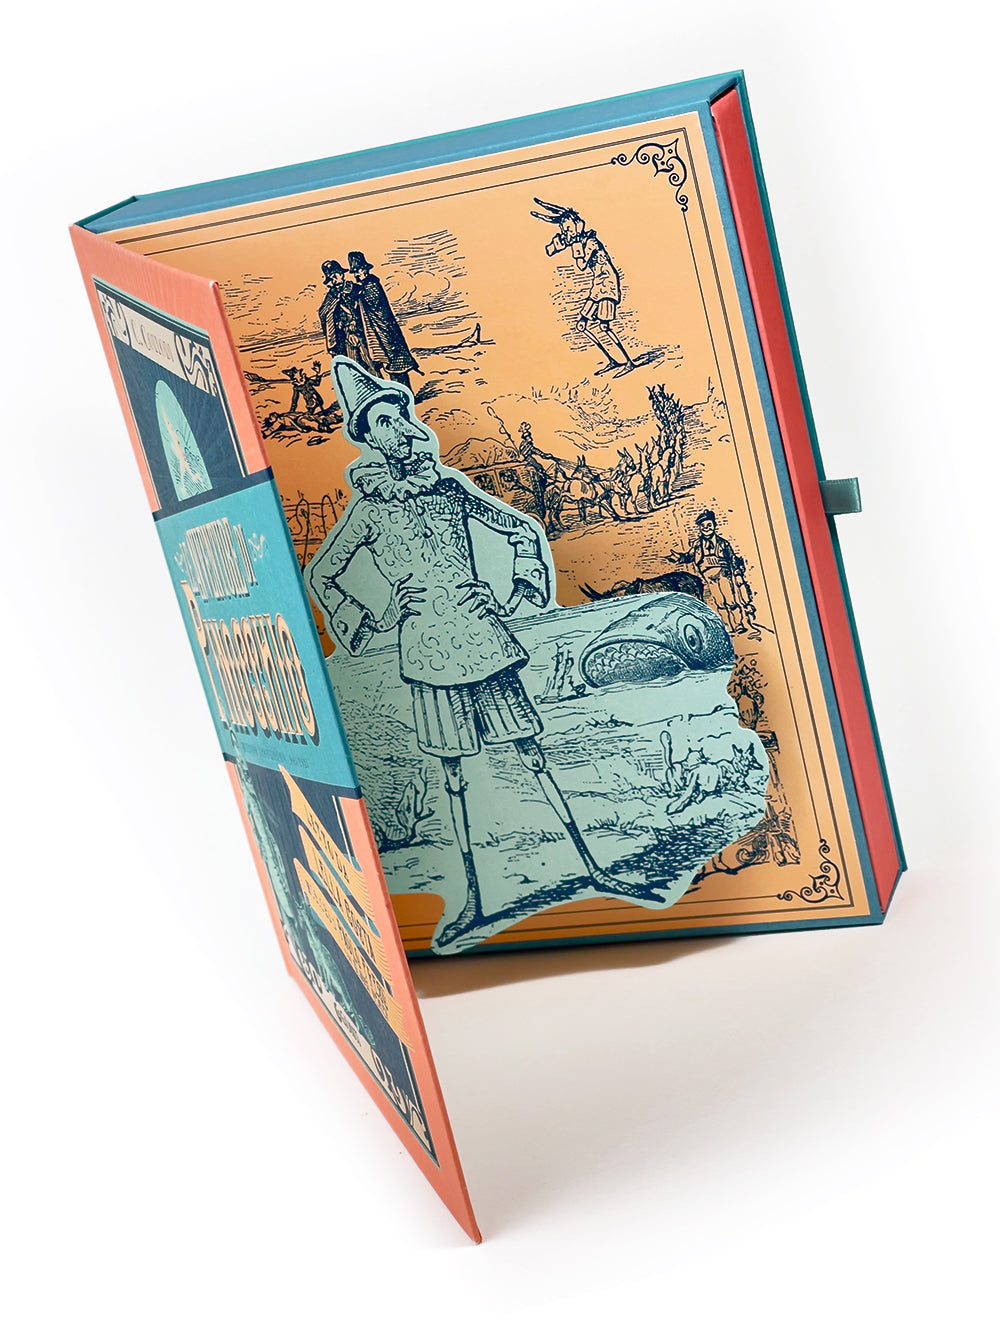 Le avventure di Pinocchio. Edizione Anniversario 1883-2023::Letto da Lella Costa. Musiche di Paolo Fresu con Glauco Venier